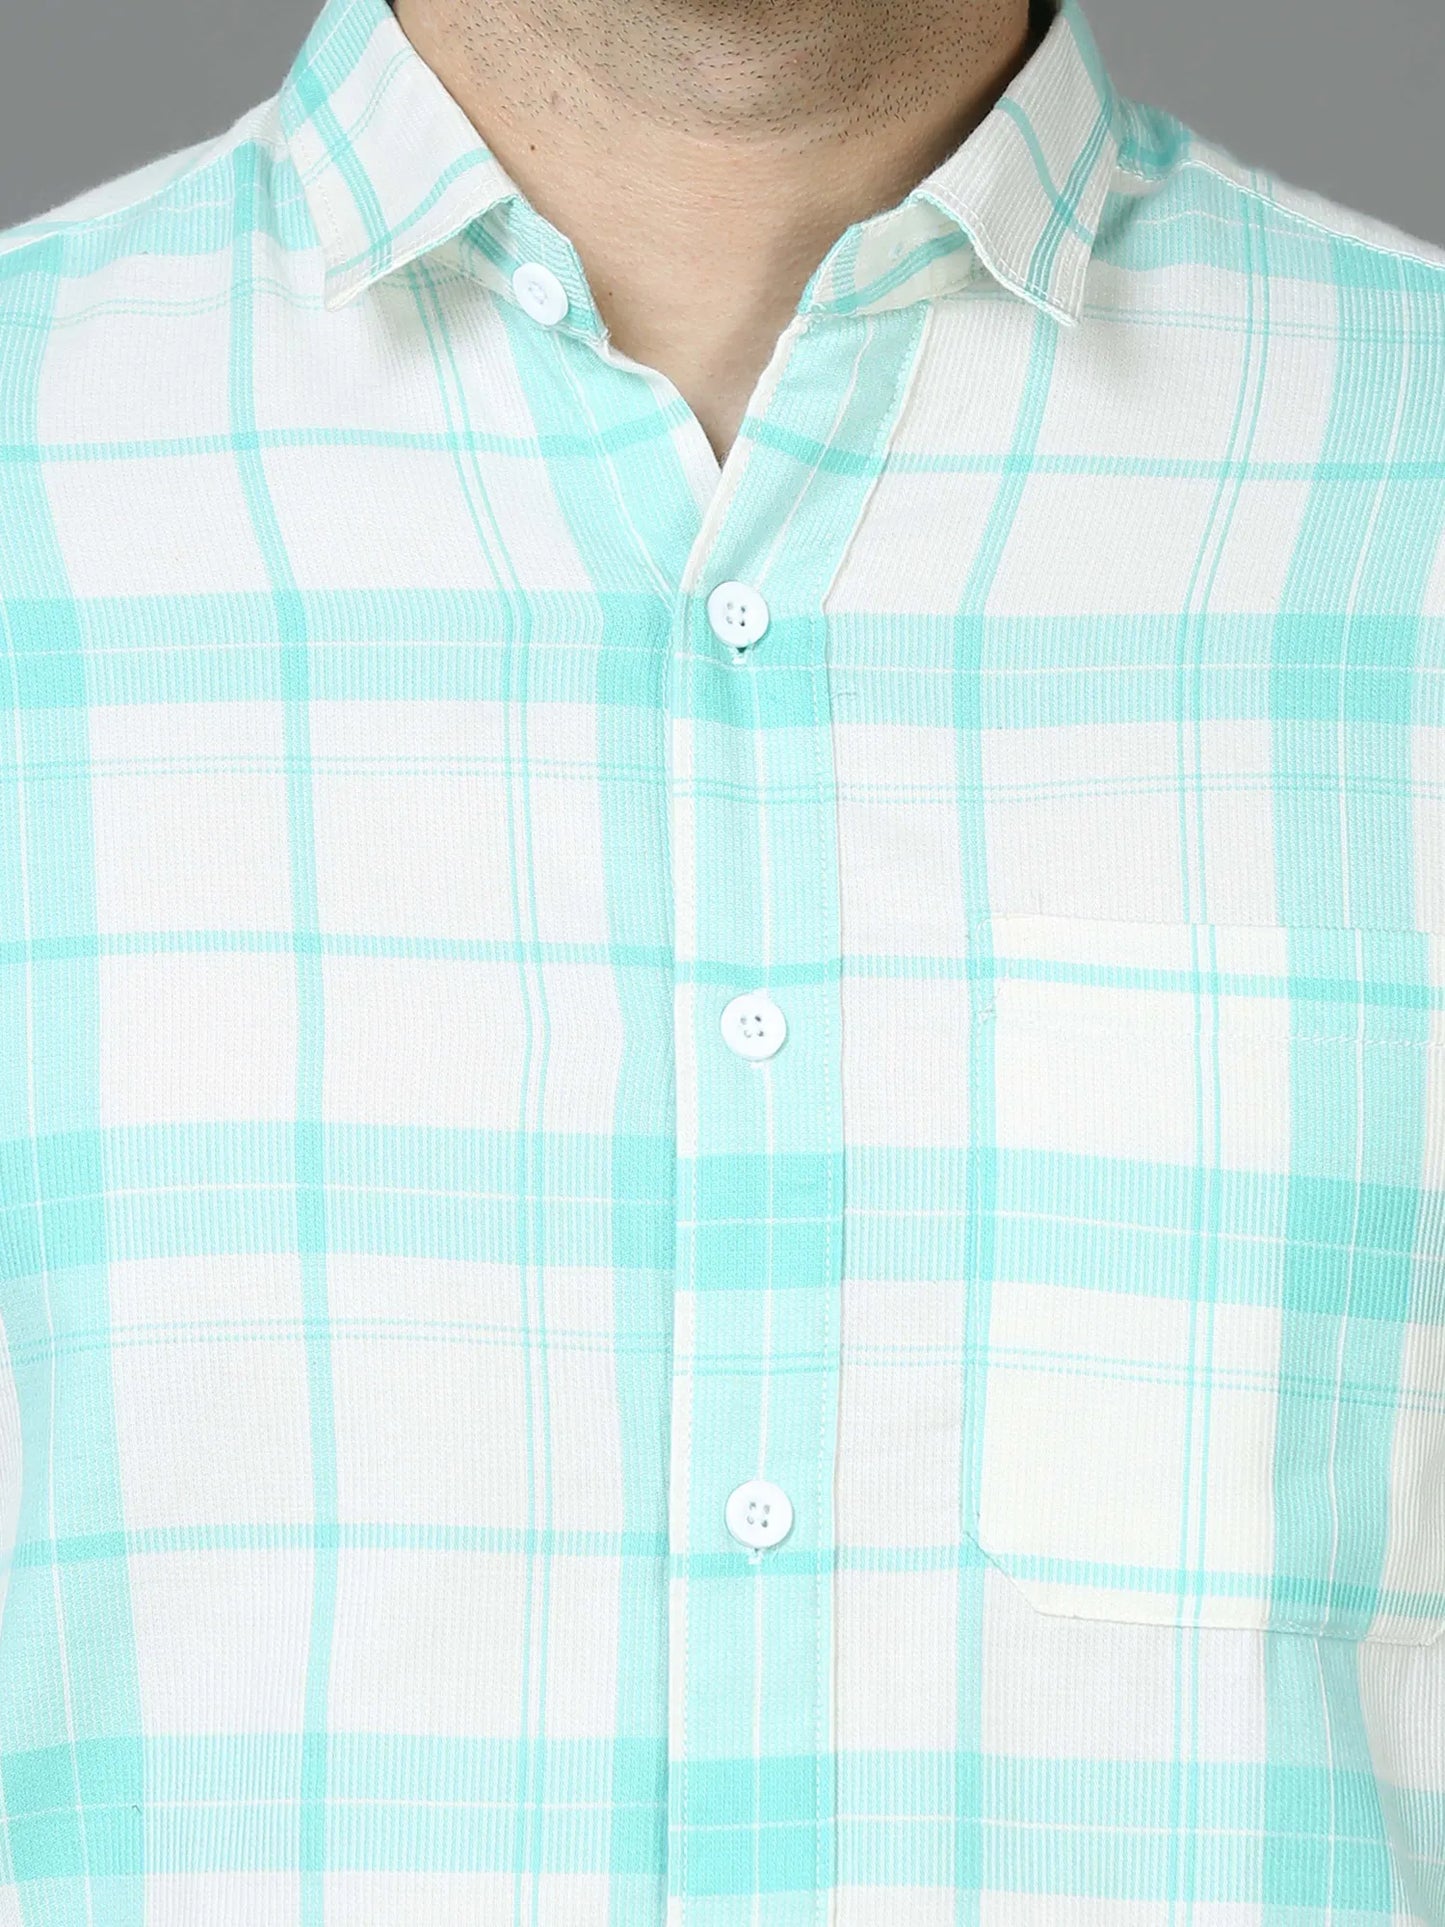 Vibrant Green Lush Checkered Shirt for Men 